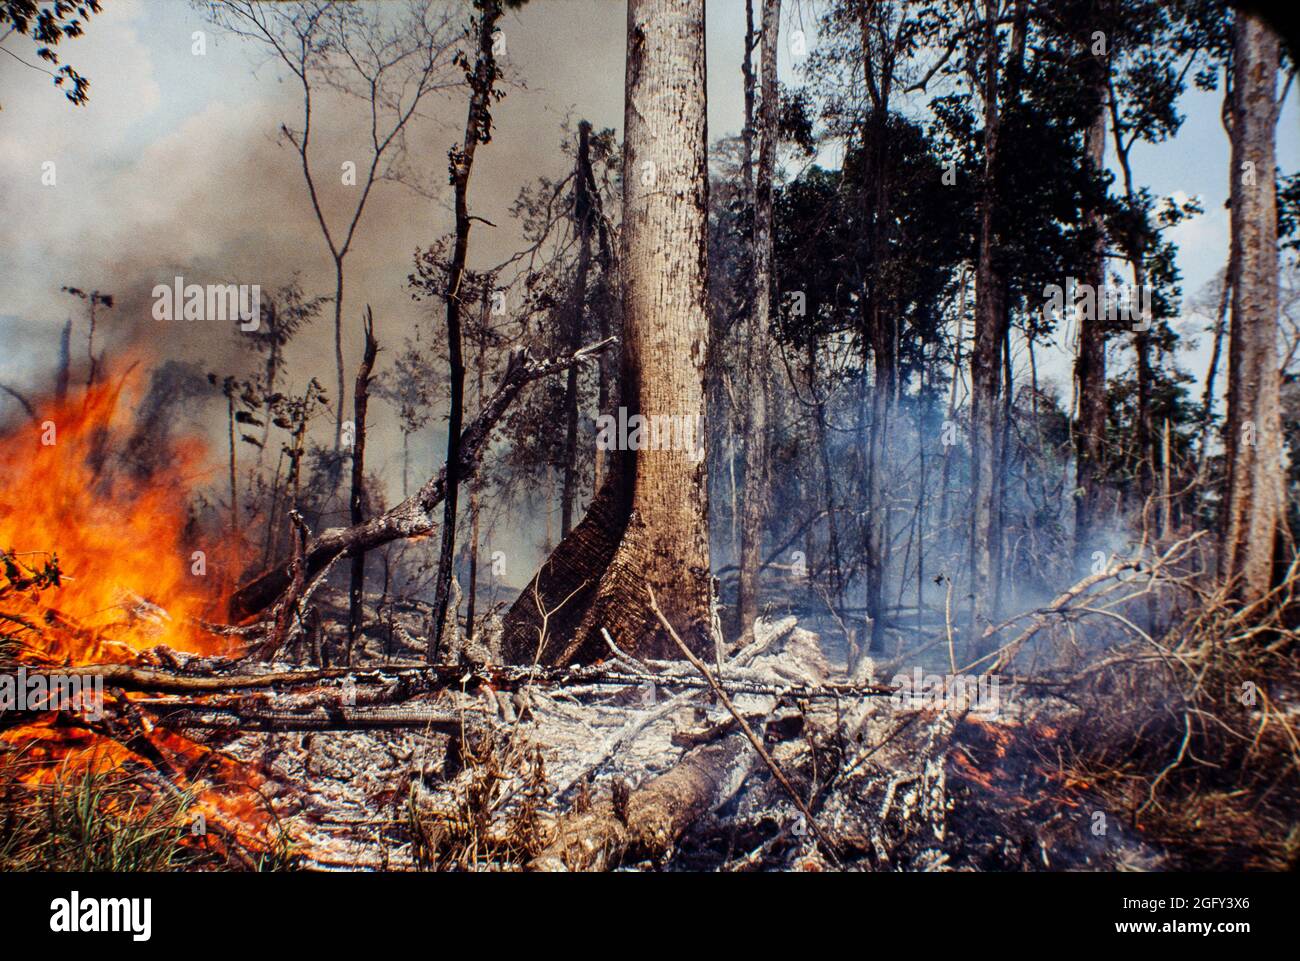 Llamas y calor, detalles de la quema de la selva amazónica, degradación ambiental causada por la deforestación. Foto de stock